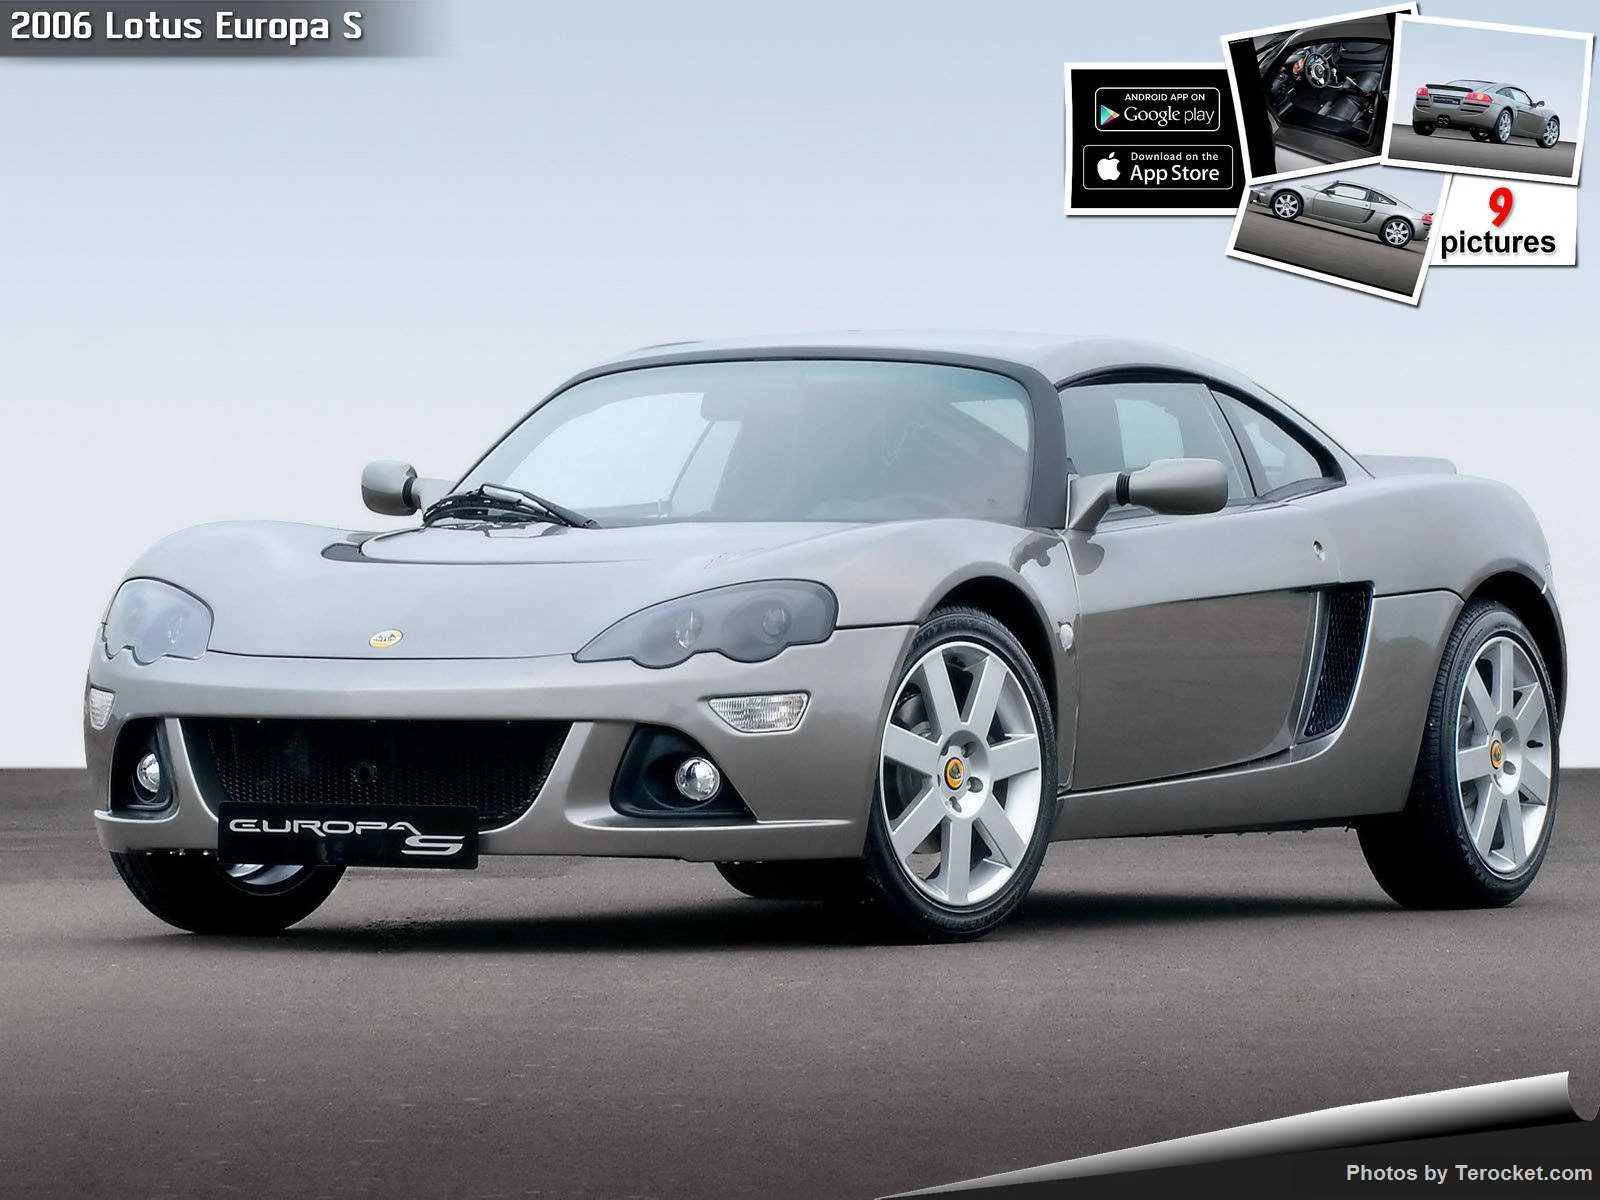 Hình ảnh siêu xe Lotus Europa S 2006 & nội ngoại thất